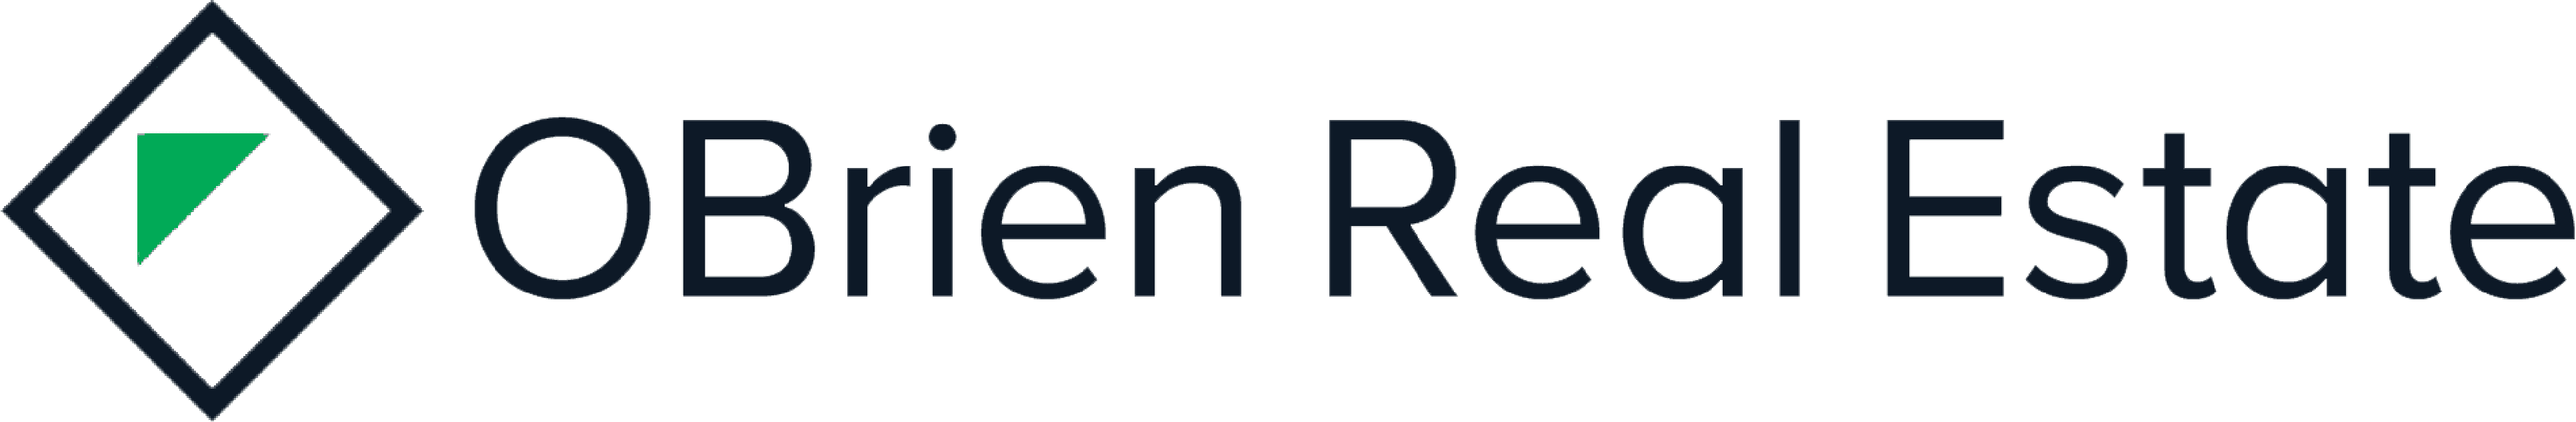 OBrien real estate agency